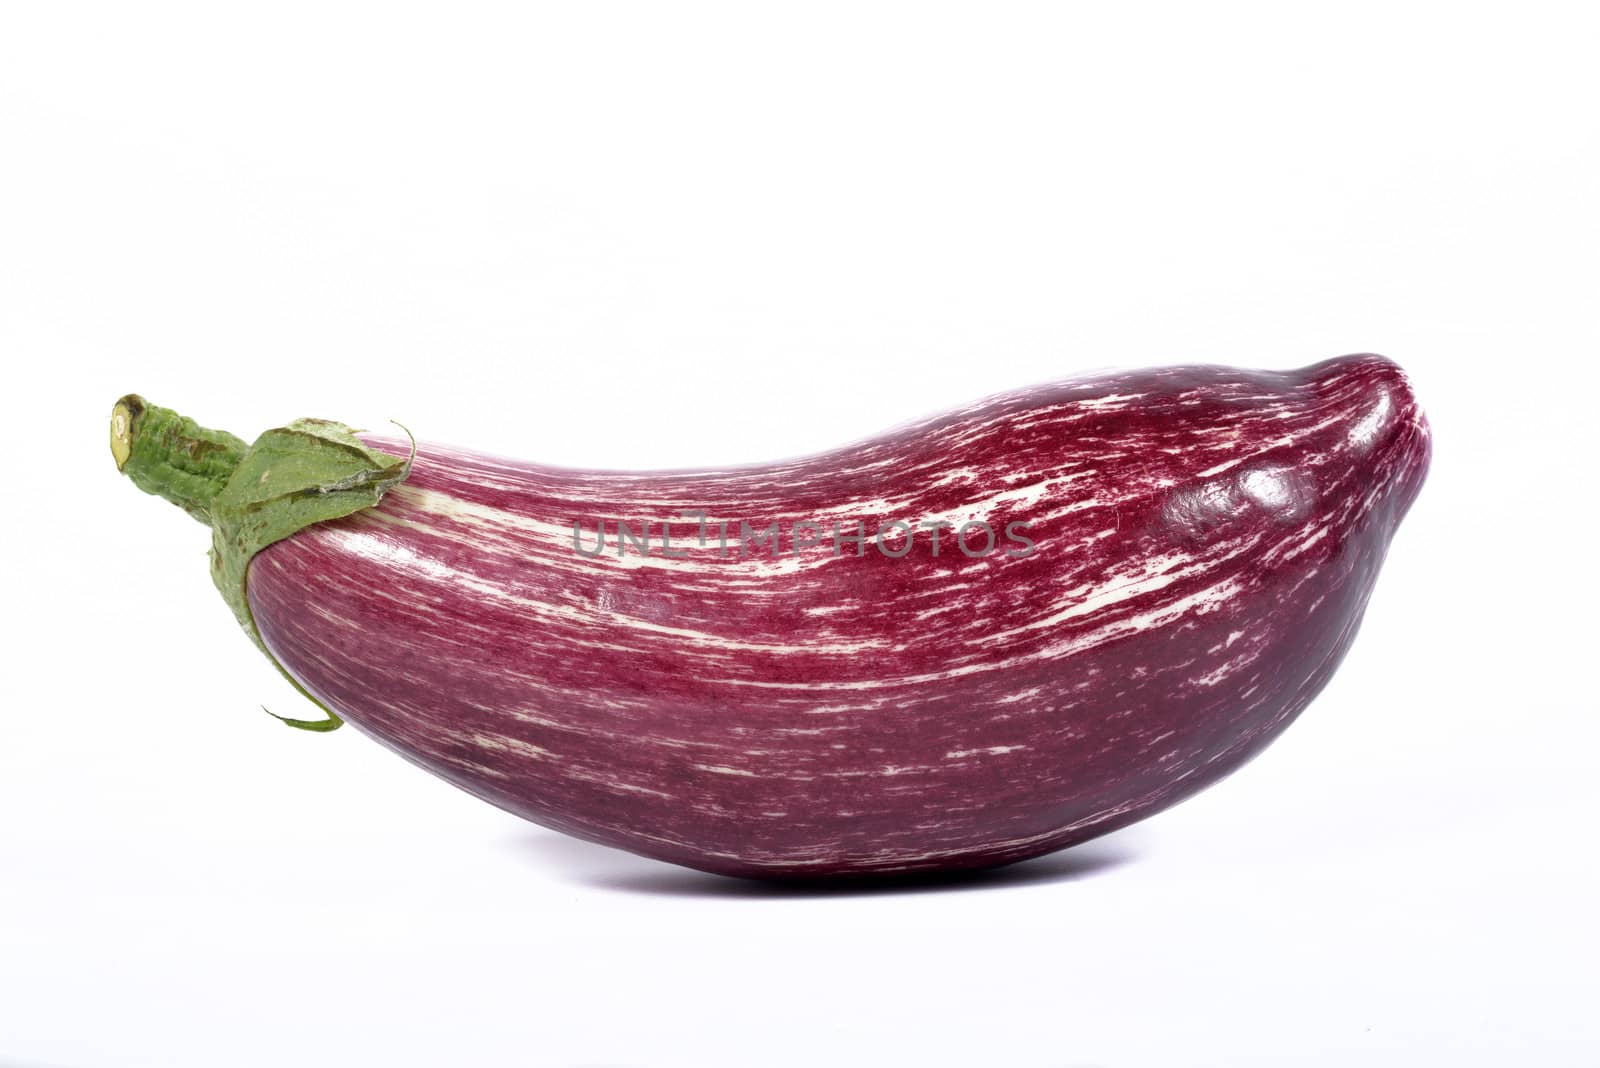 Eggplant by philipimage